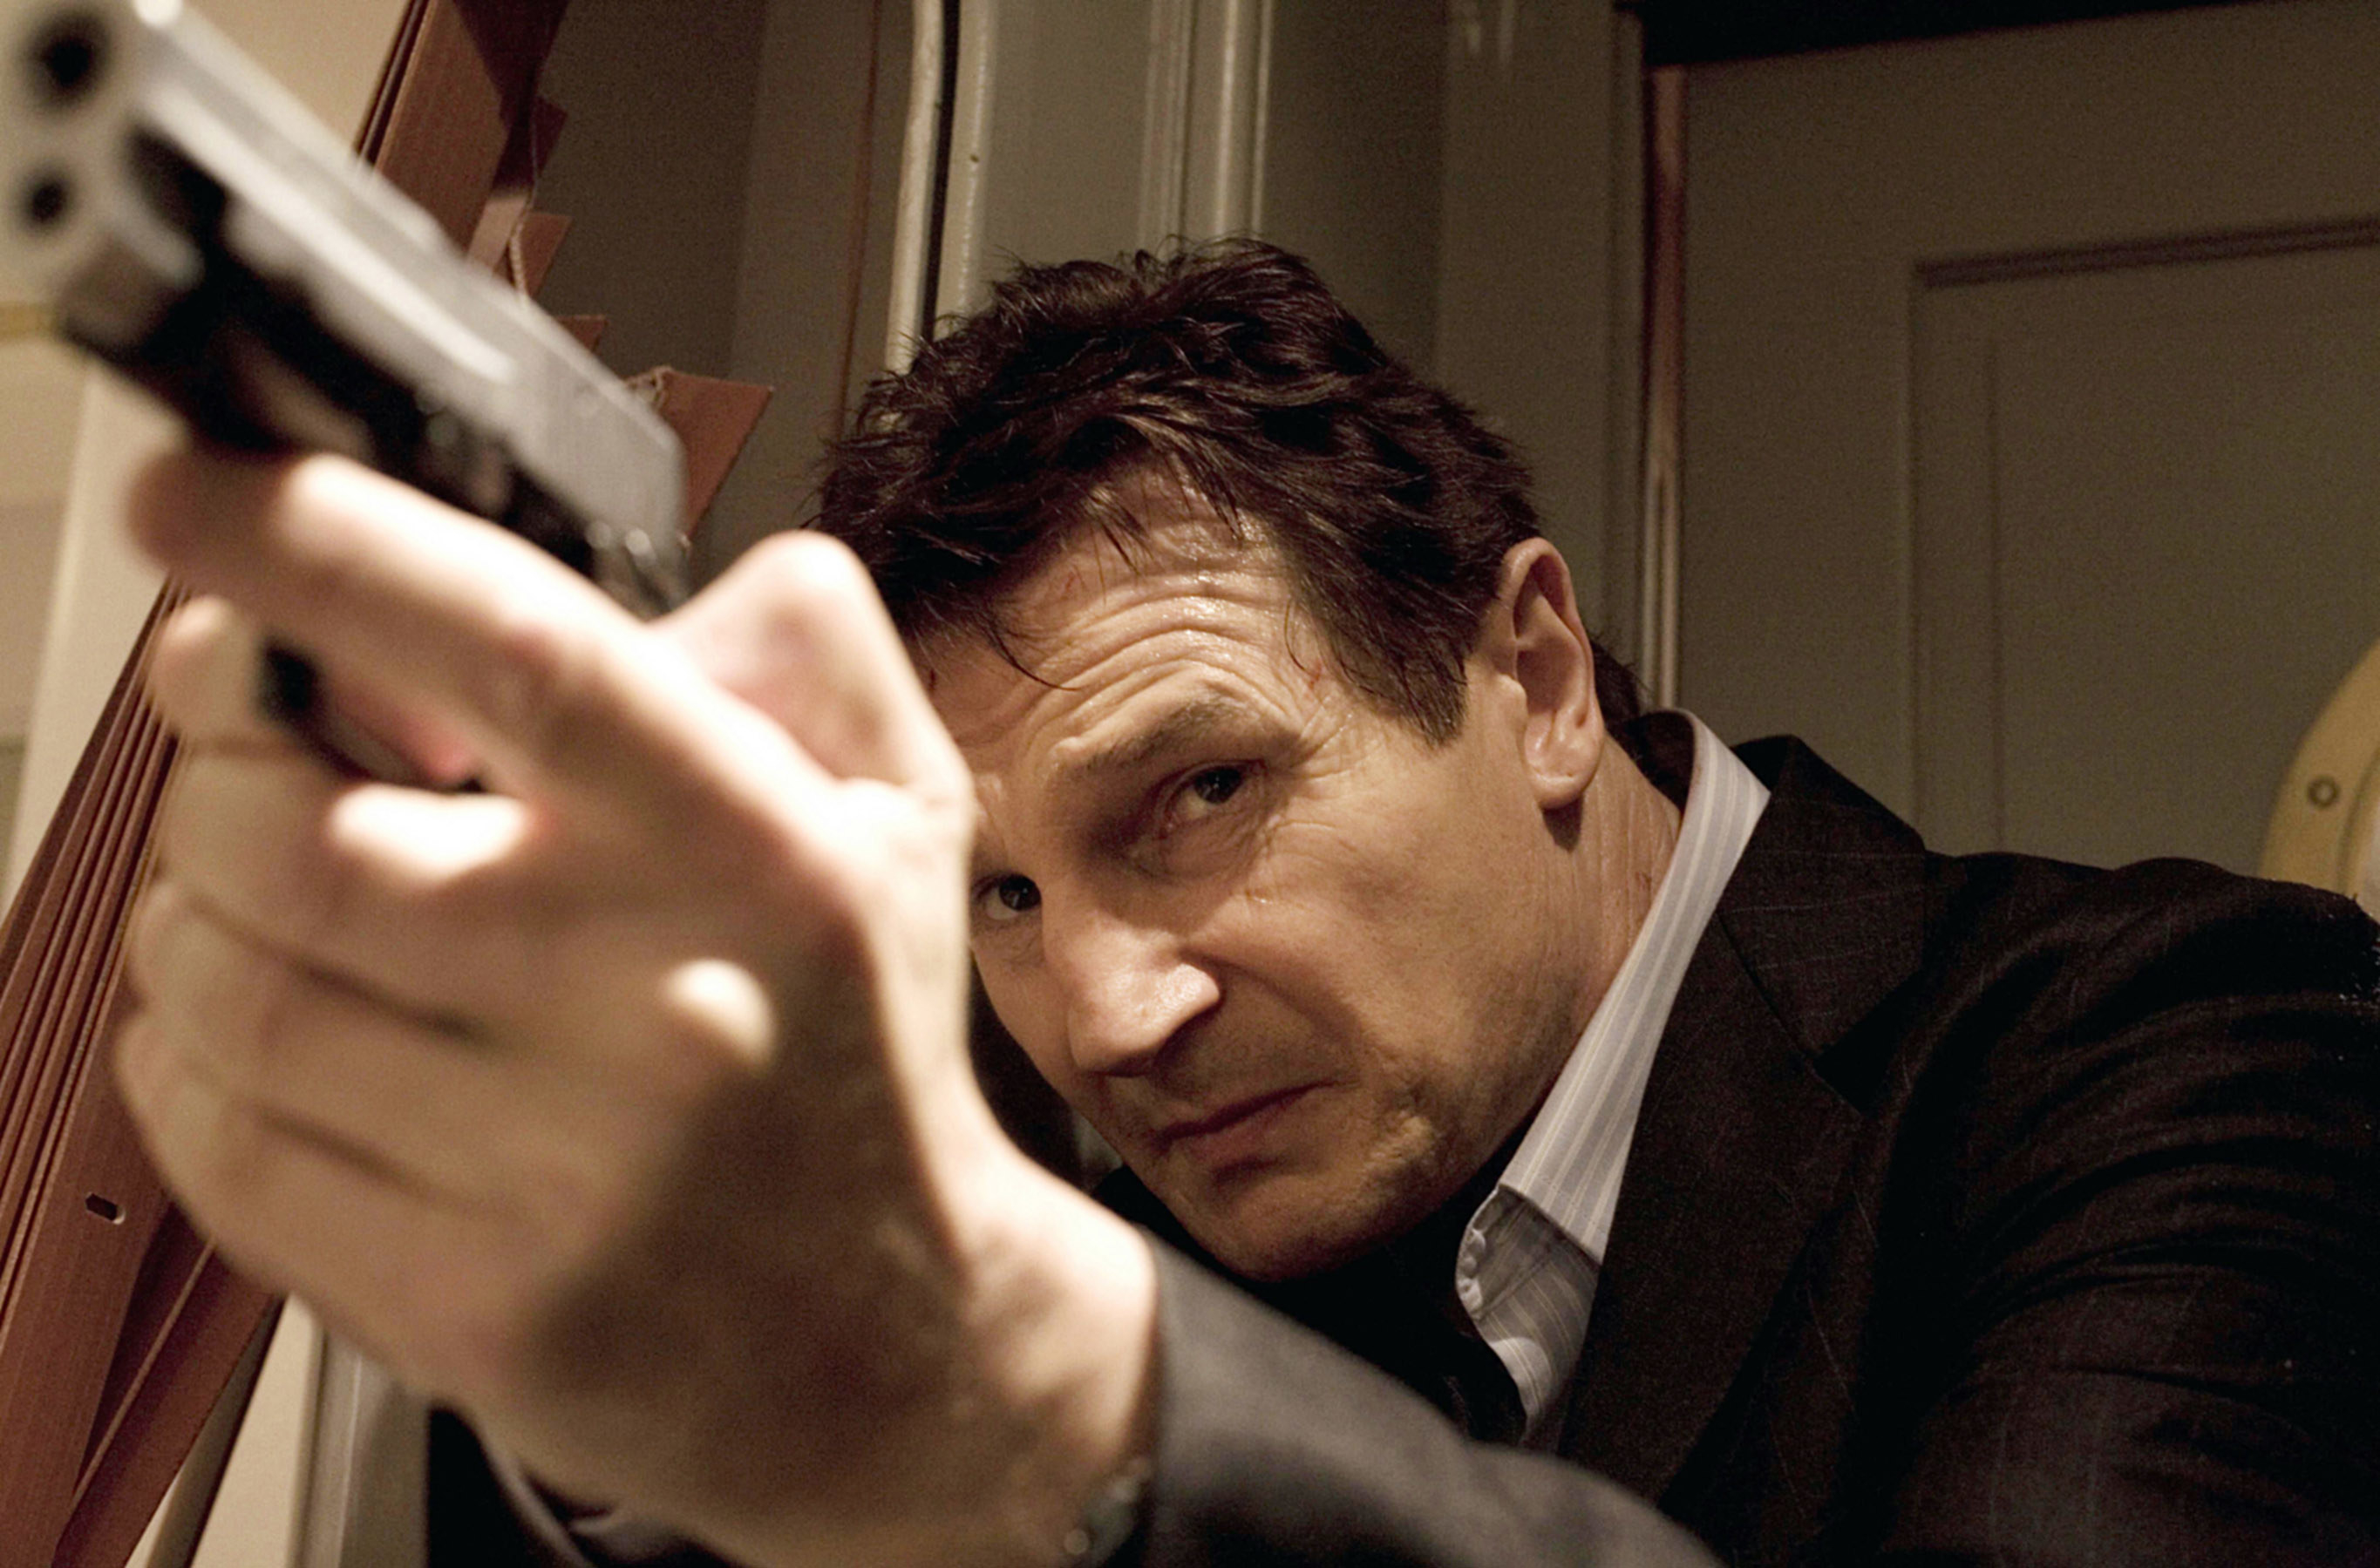 Liam Neeson aims a gun